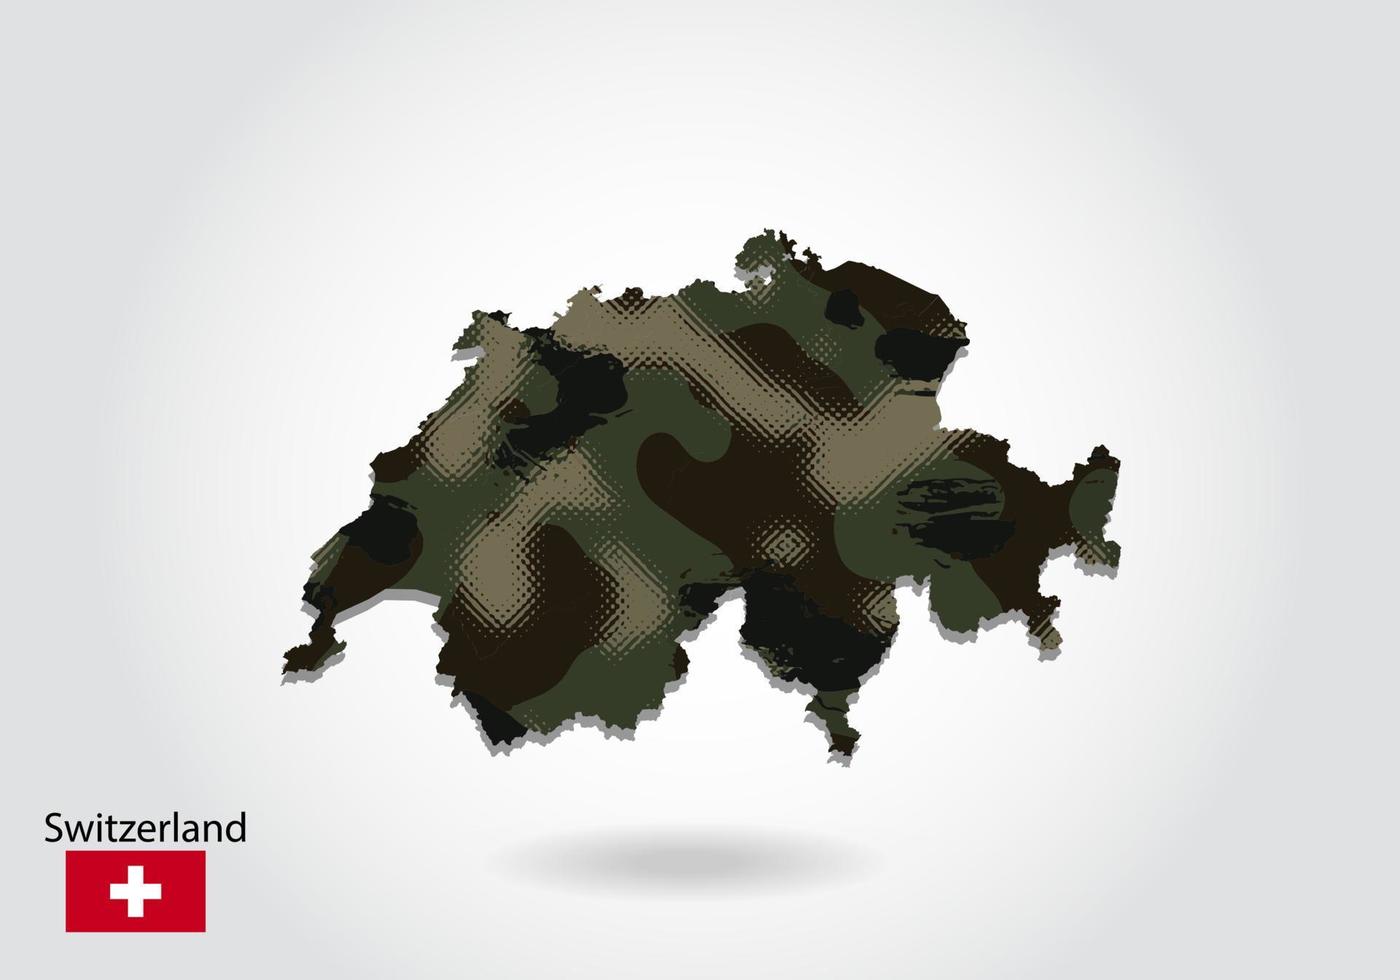 carte suisse avec motif camouflage, forêt - texture verte sur la carte. concept militaire pour l'armée, le soldat et la guerre. armoiries, drapeau. vecteur